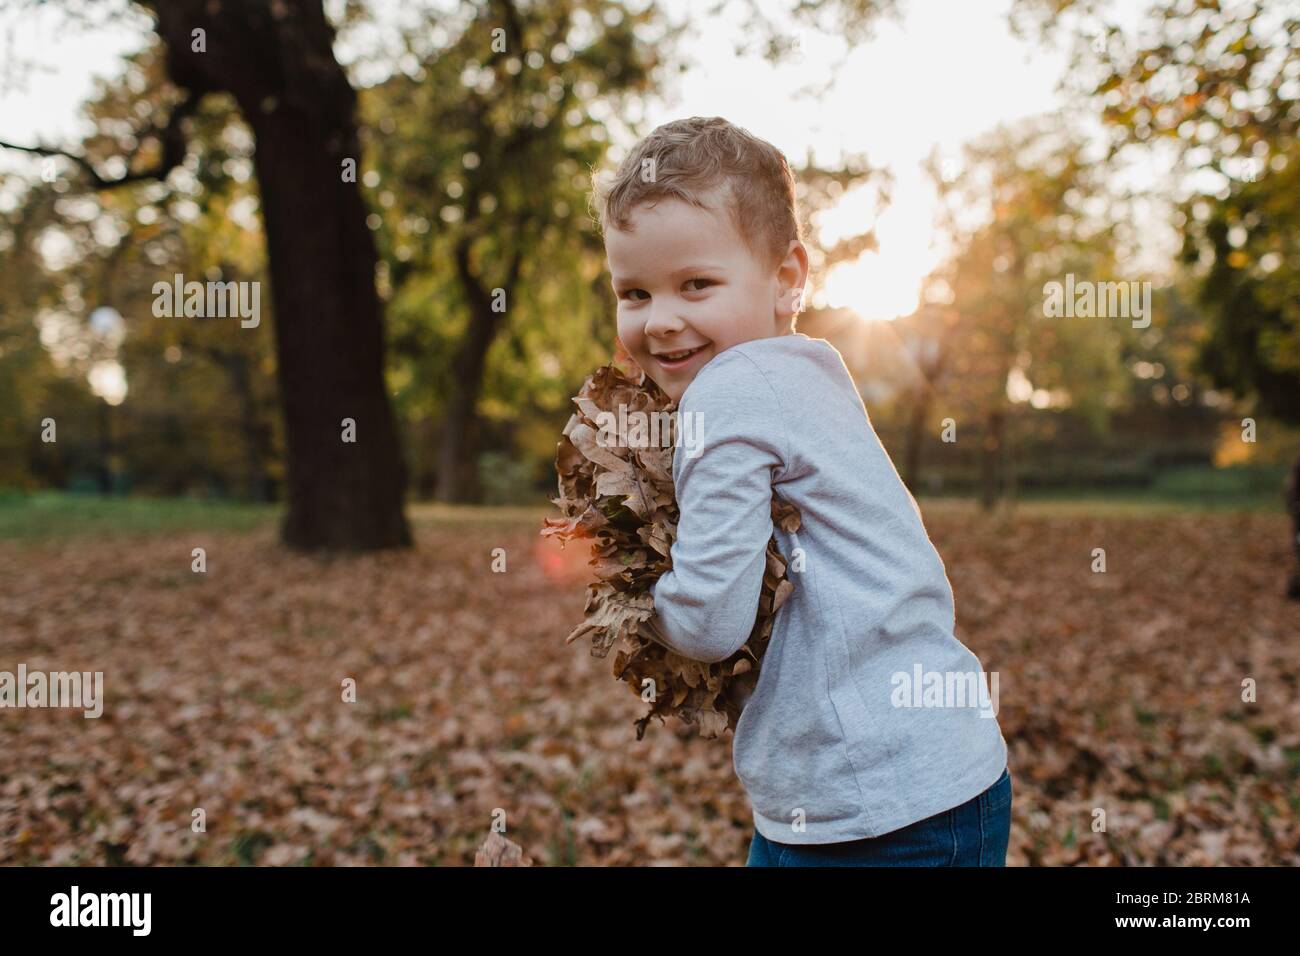 Junger Junge, der Herbstblätter hält. Nettes Kind mit einem Arm von trockenen braunen Blättern aus dem Boden lächelnd und Blick auf die Kamera. Stockfoto